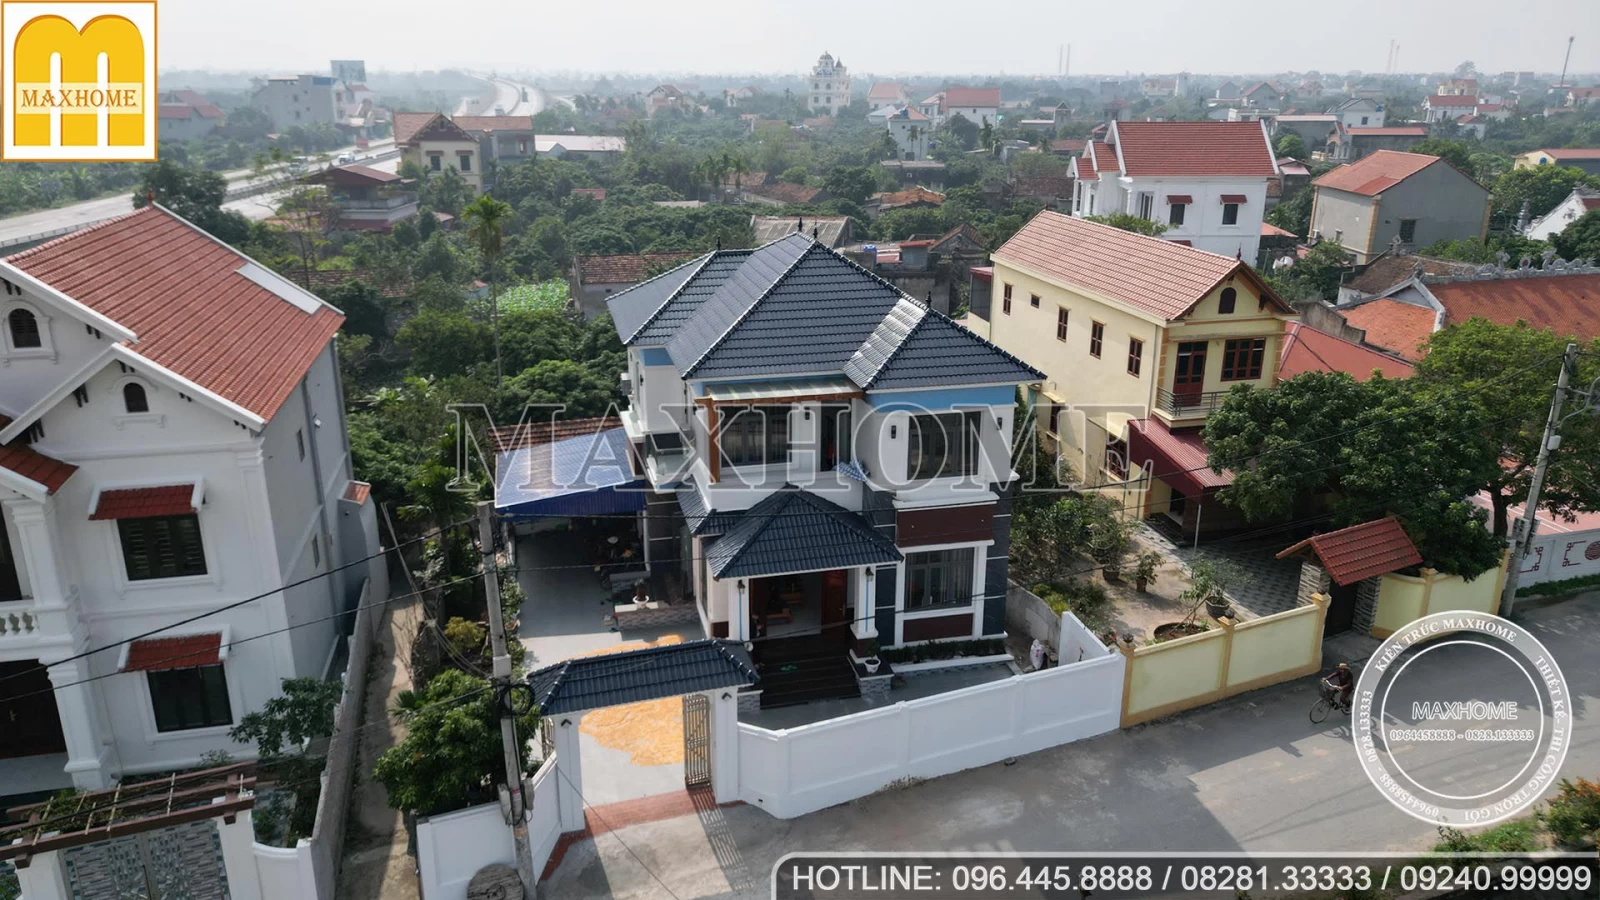 Maxhome thi công hoàn thiện nhà 2 tầng SIÊU ĐẸP tại Hưng Yên | MH02899